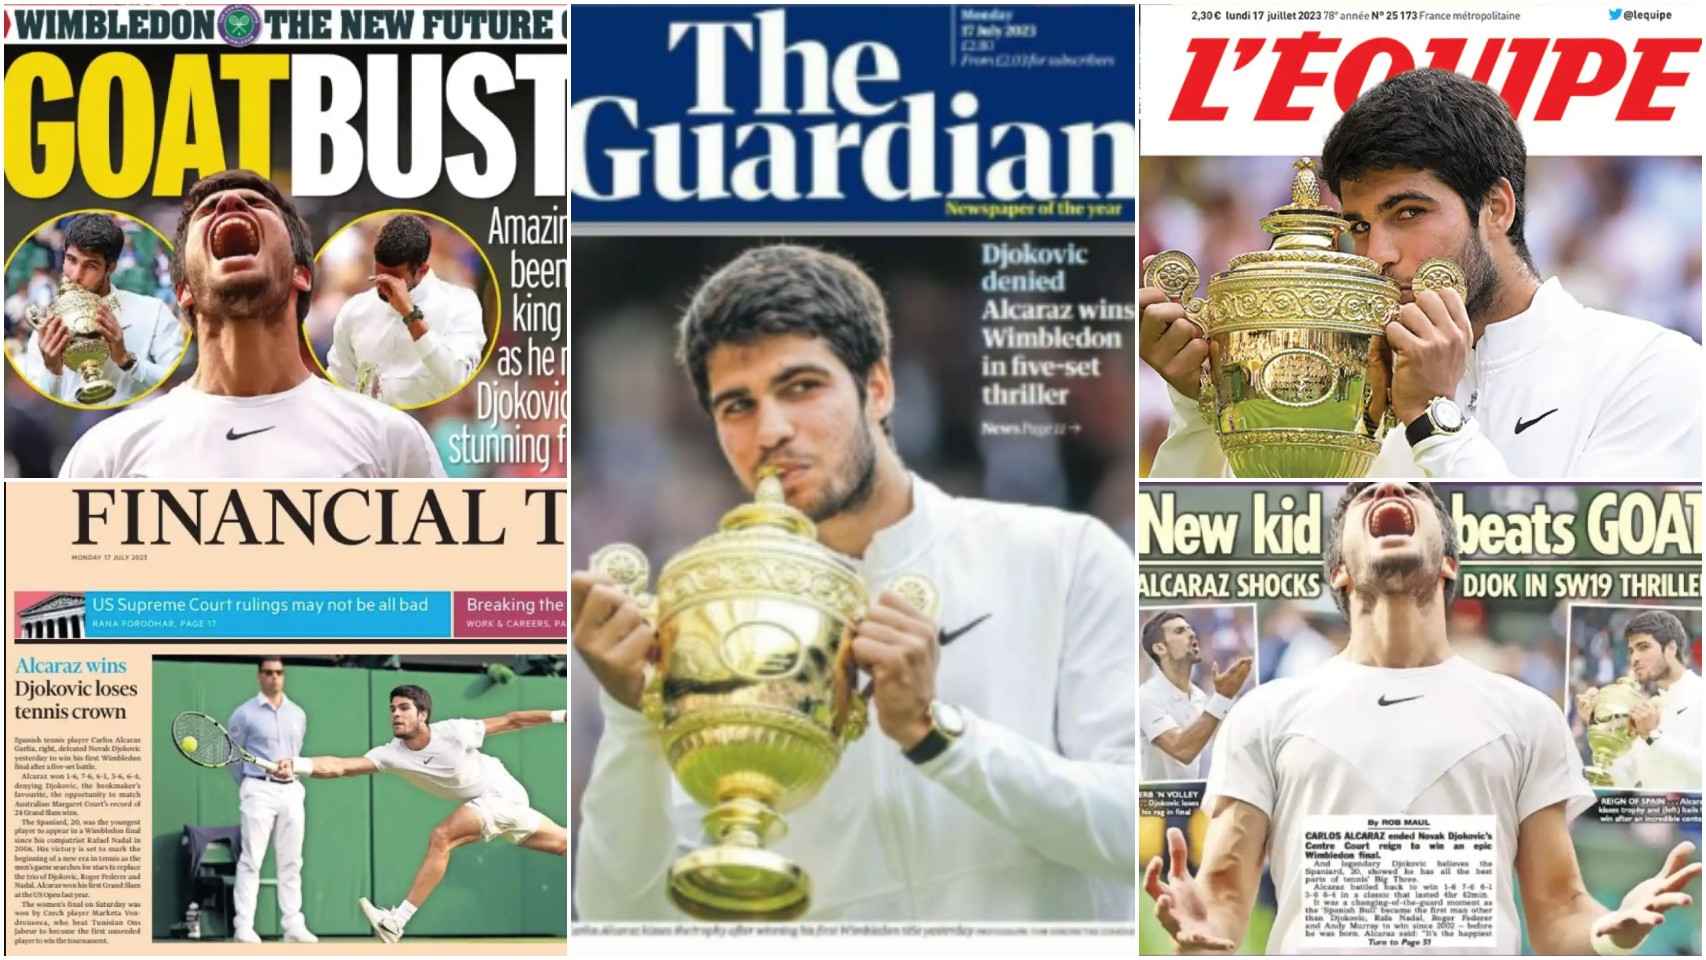 Alcaraz gana en Wimbledon en cinco sets, titula 'The Guardian'